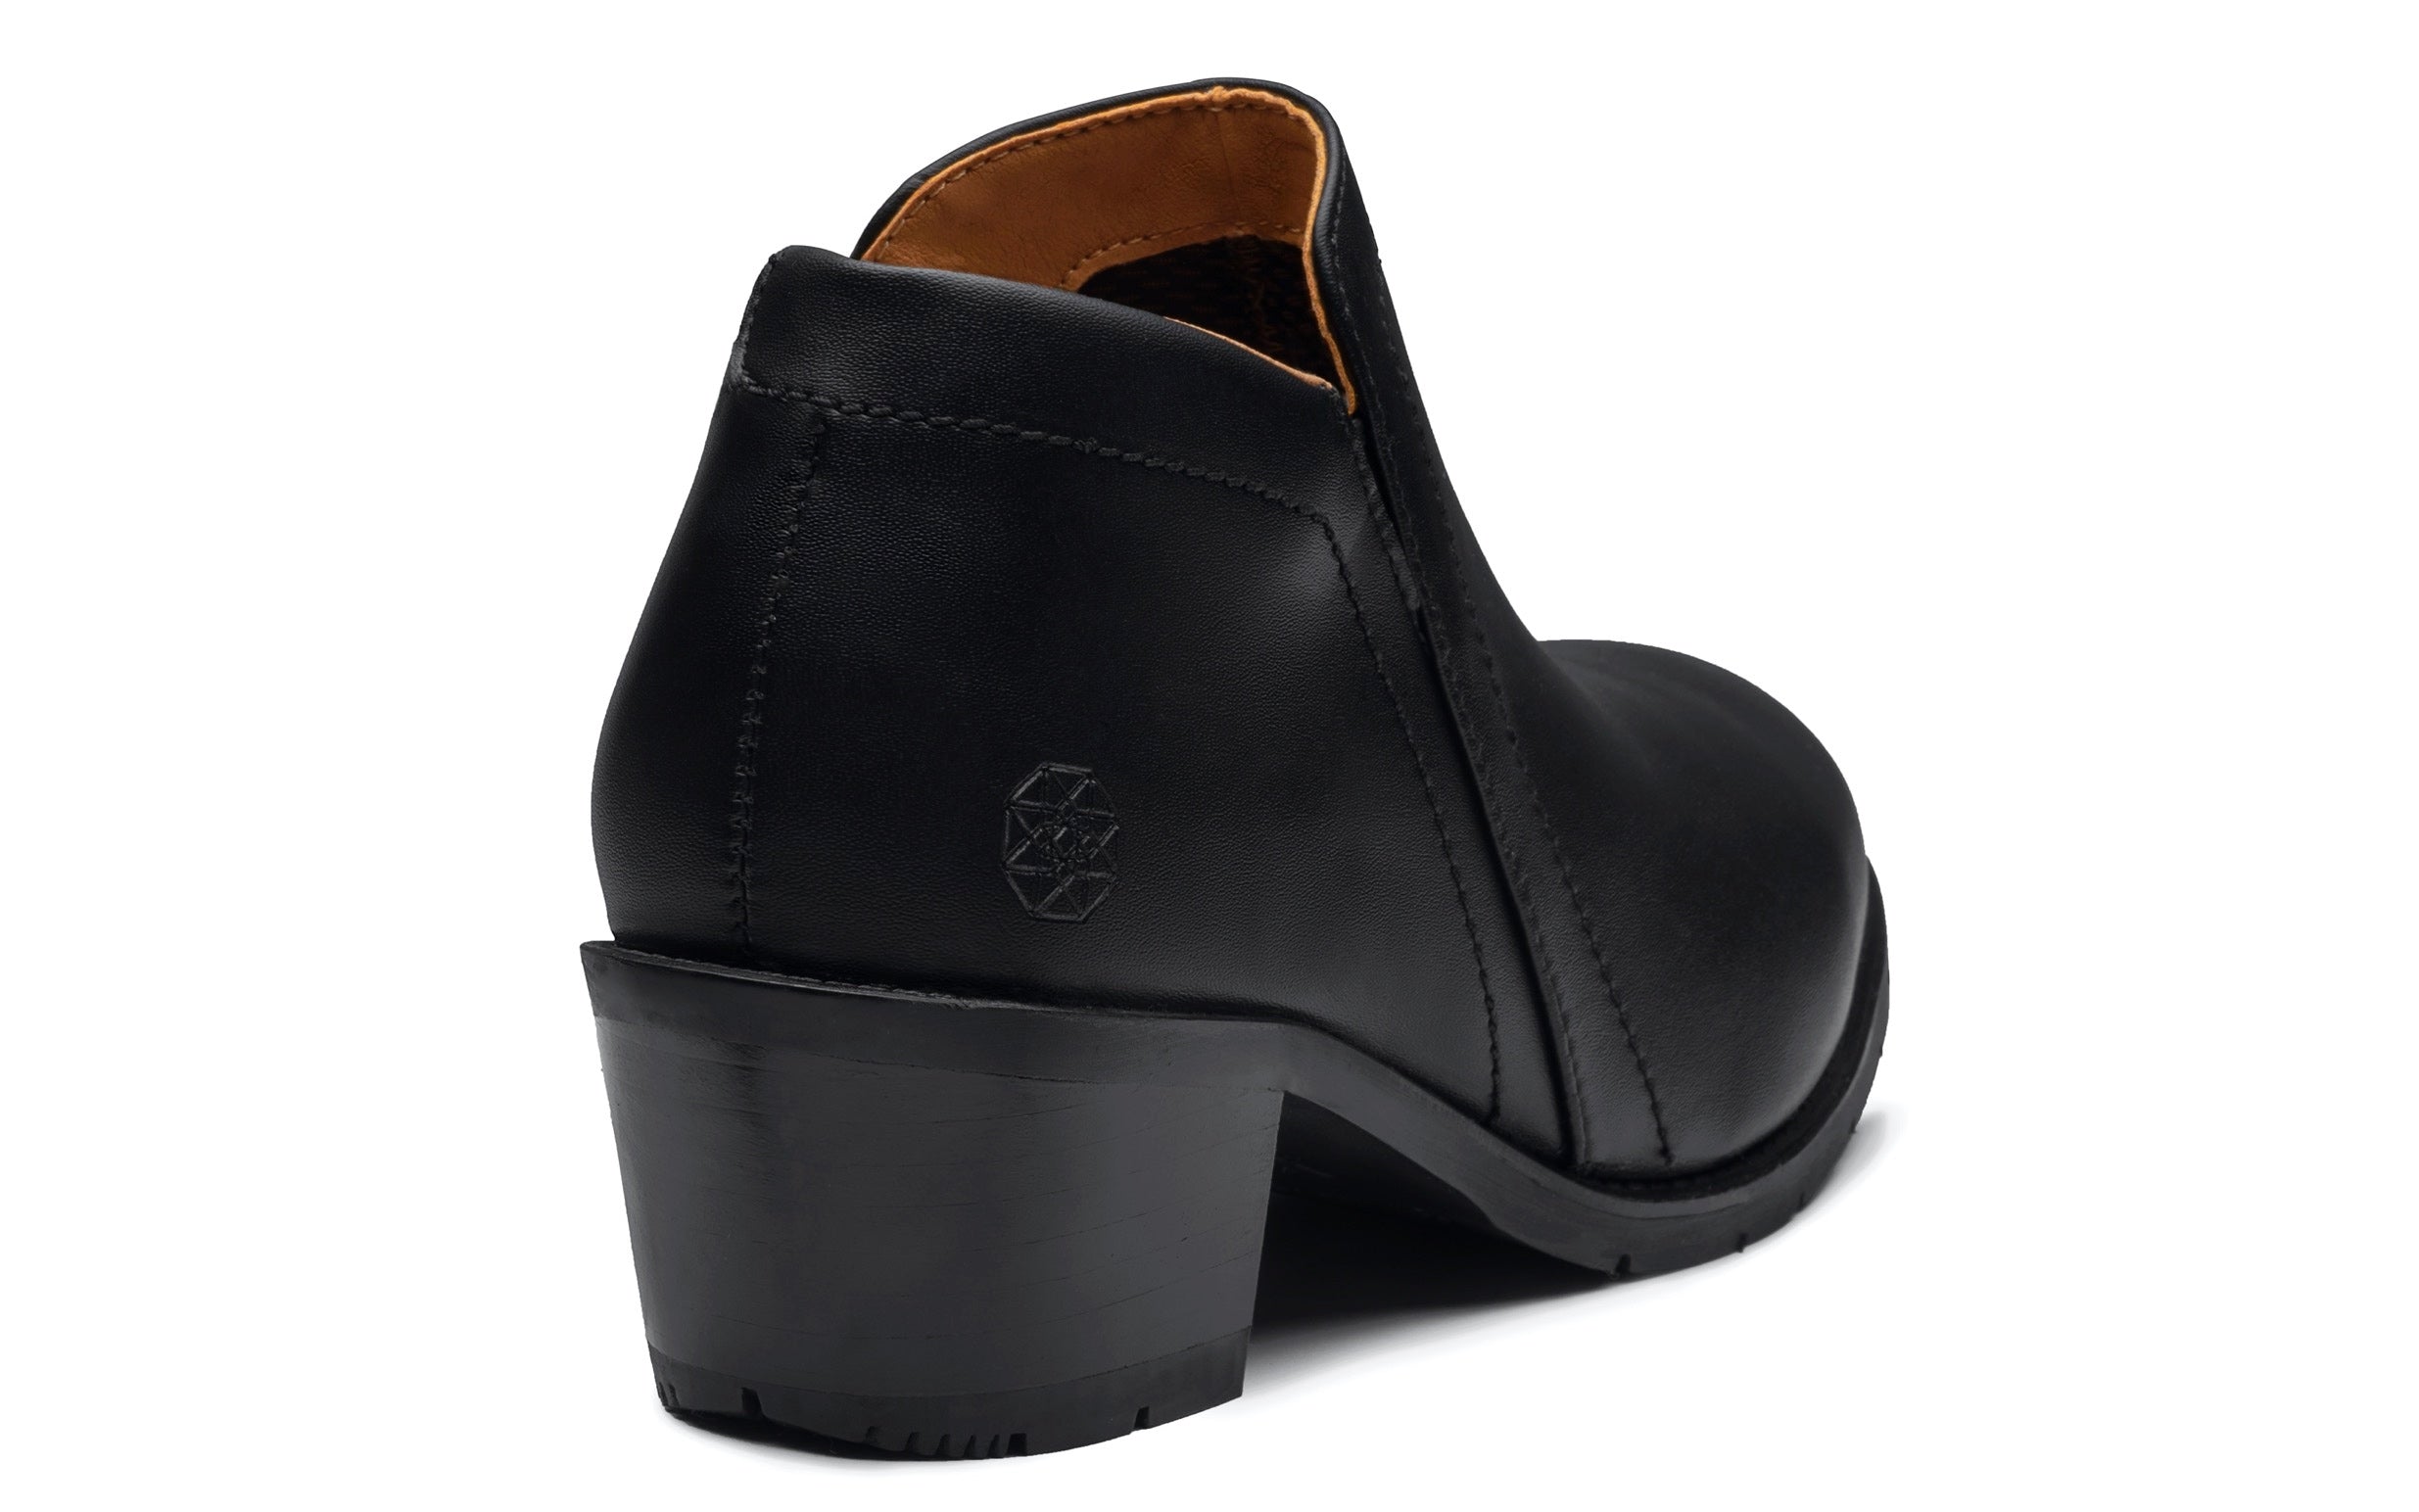 Gravity Vegan Women's Steel-Toe Safety Shoe in Vegan Blackout Leather